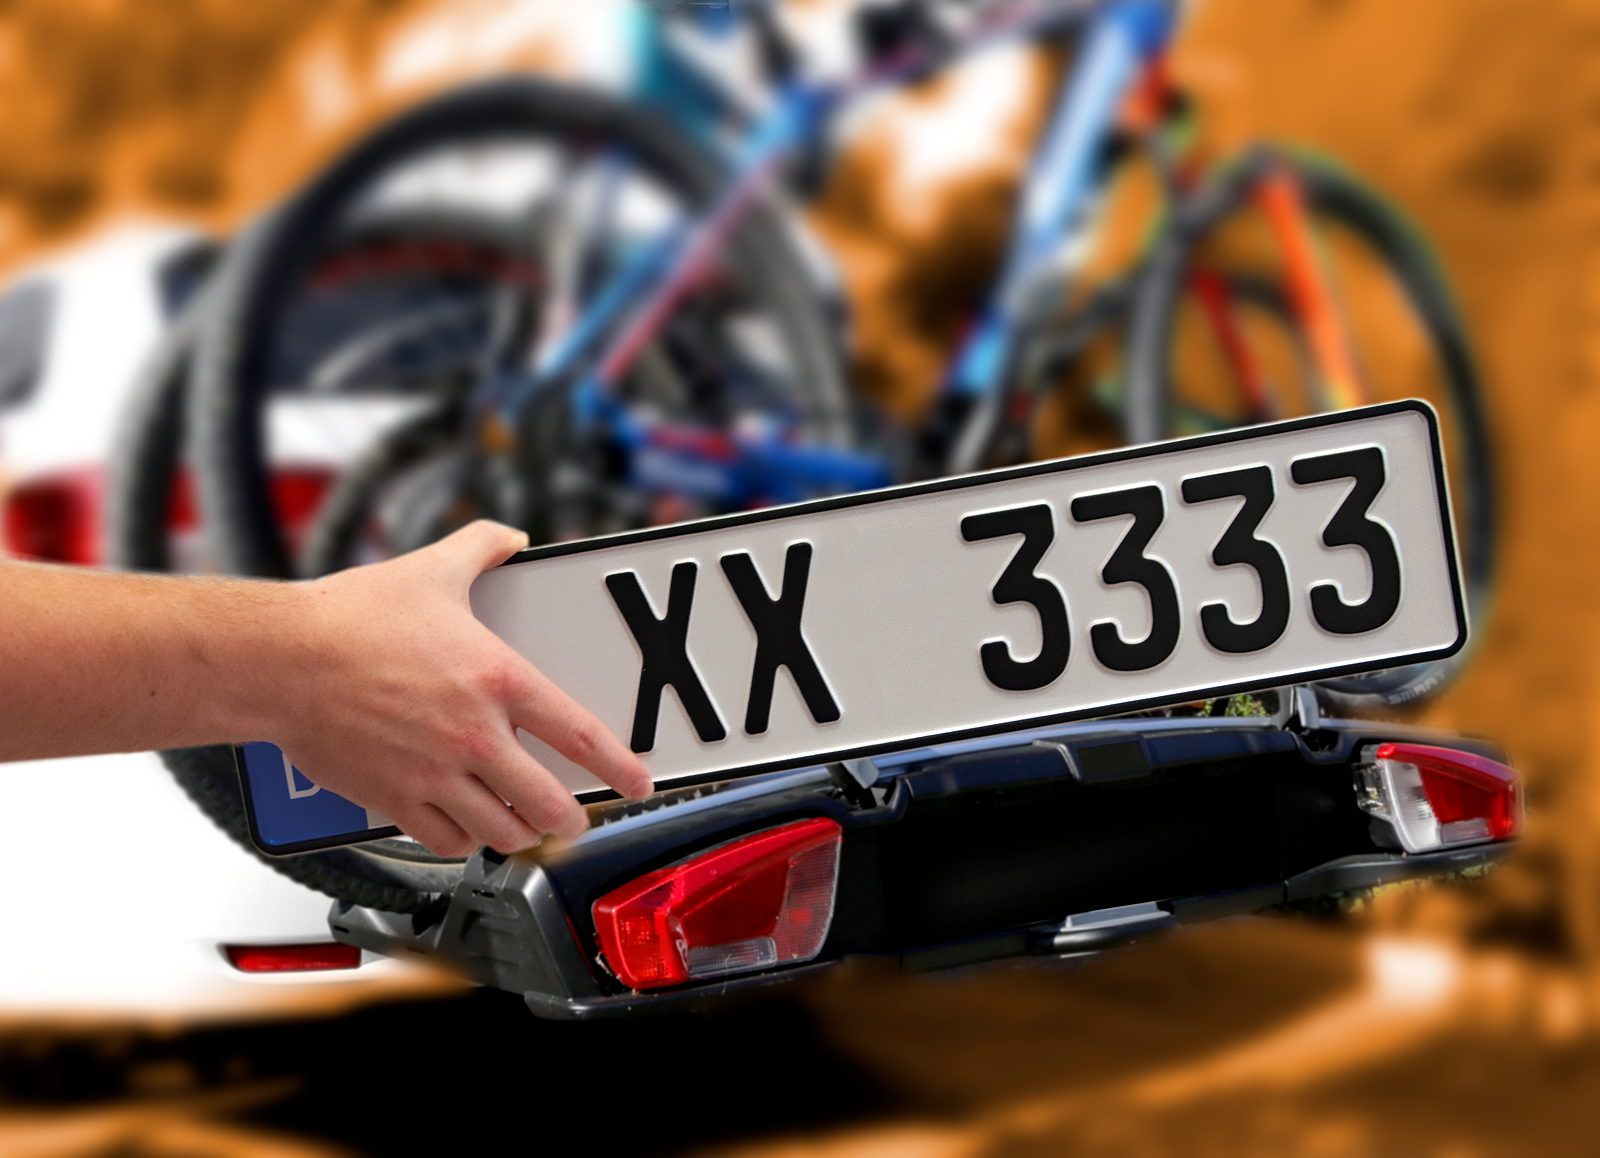 1 Fahrradträger Kennzeichen, Standardgröße für alle gängigen Marken, Fahrradträger & Anhänger